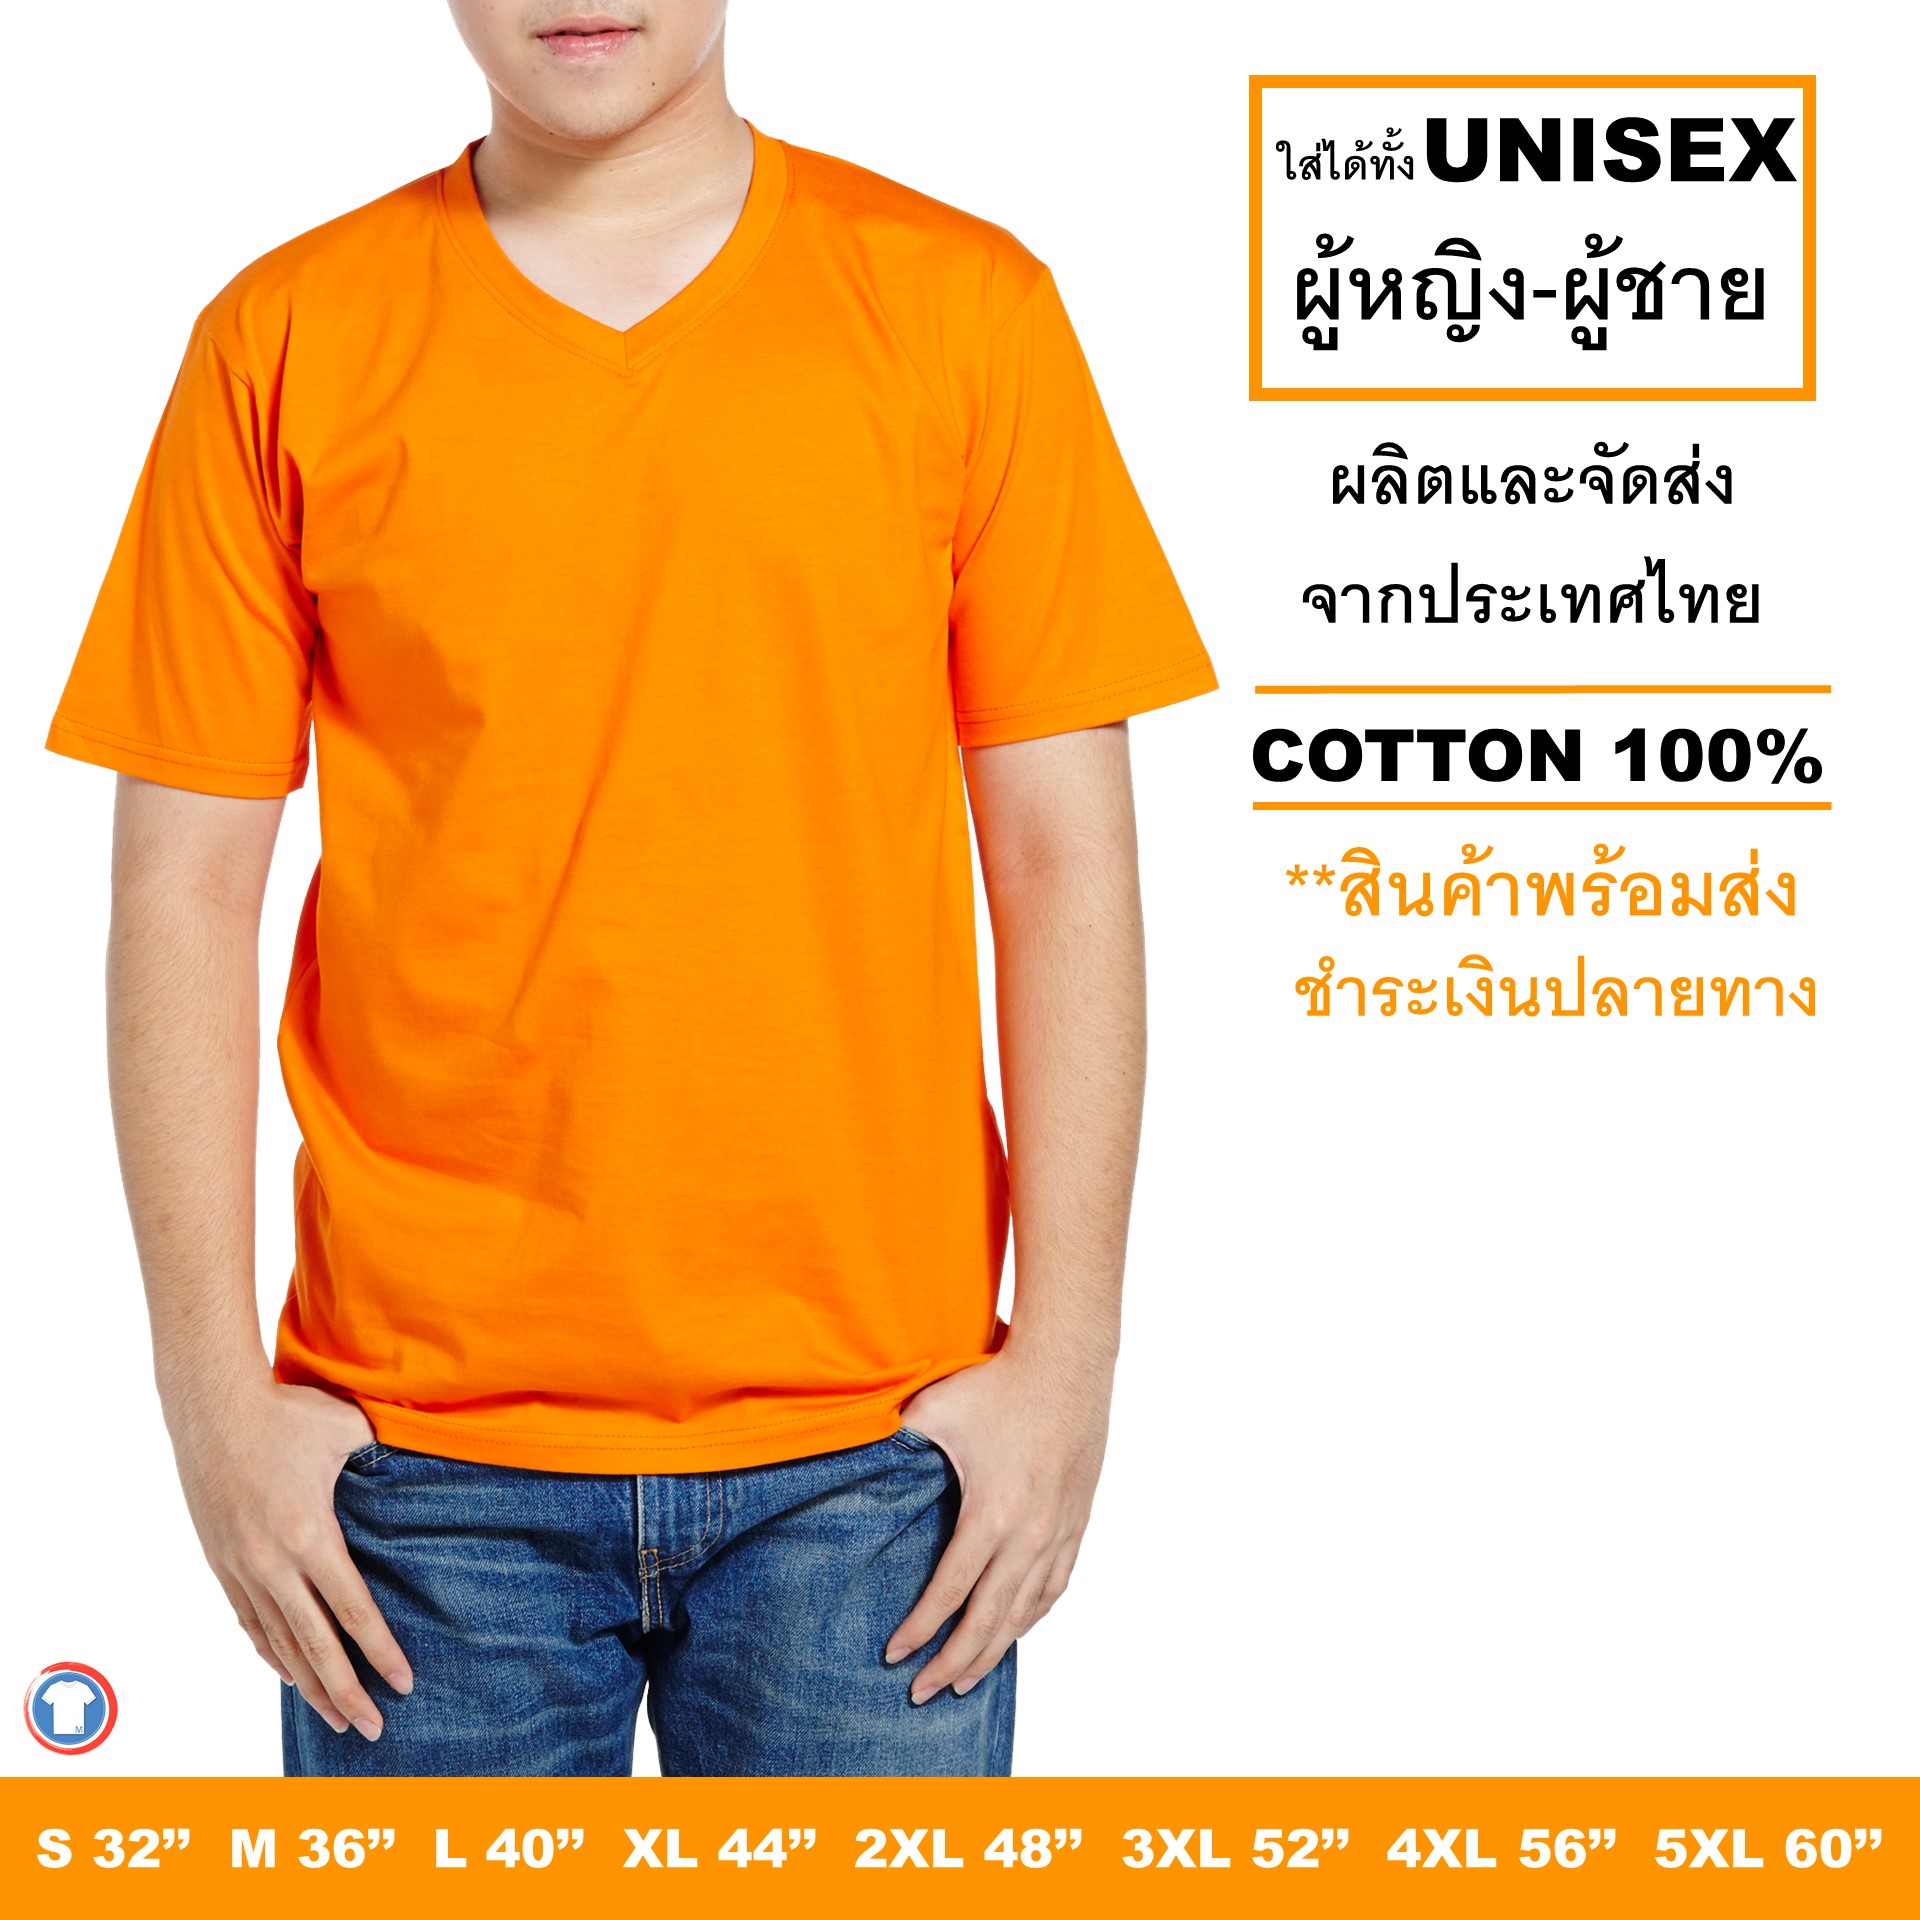 Mercury T-shirt เสื้อยืดสีพื้น คอวี สีส้ม แขนสั้น ผ้านิ่ม สีไม่ตก ไม่ย้วย เป็นได้ทั้ง เสื้อยืดผู้หญิง เสื้อยืดผู้ชาย จัดส่งเร็ว (Short sleeve t-shirt)